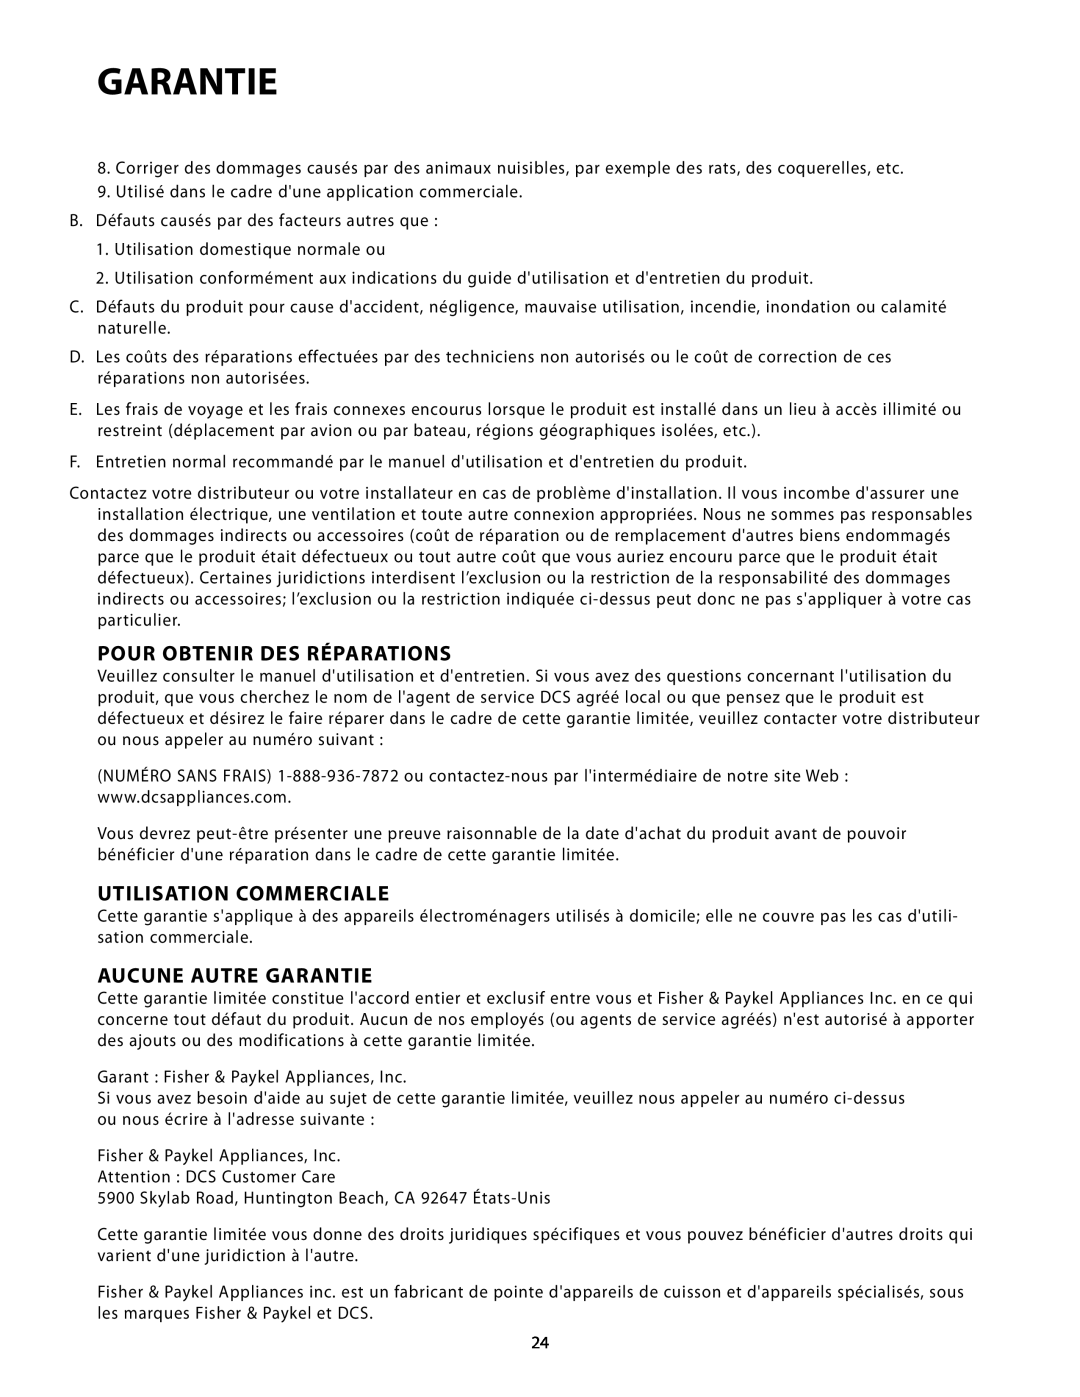 Fisher & Paykel RF24R, RF24T manual Pour Obtenir Des Réparations, Utilisation Commerciale, Aucune Autre Garantie 